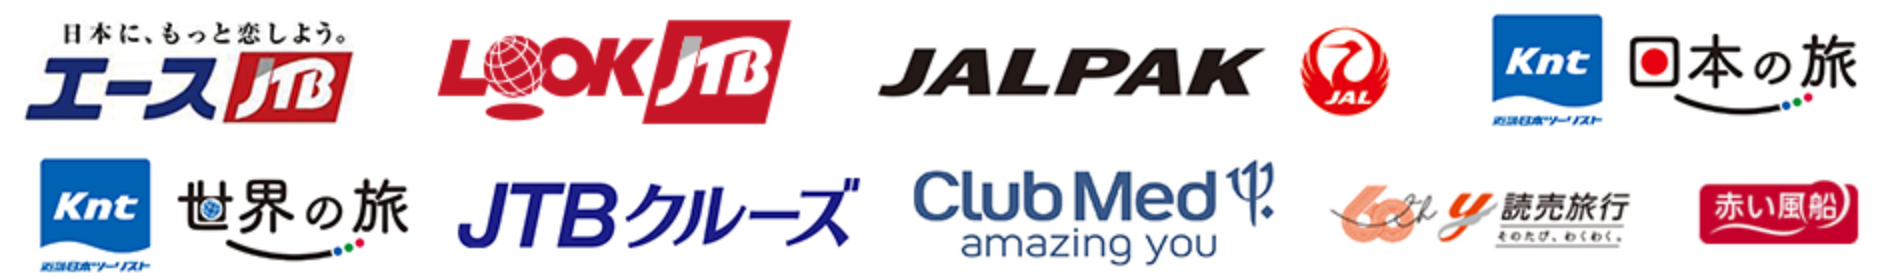 エースJTB LOOK JTB JALPAK 近畿日本ツーリスト日本の旅 近畿日本ツーリスト世界の旅 JTBクルーズ Club Med amazing you 読売旅行 赤い風船